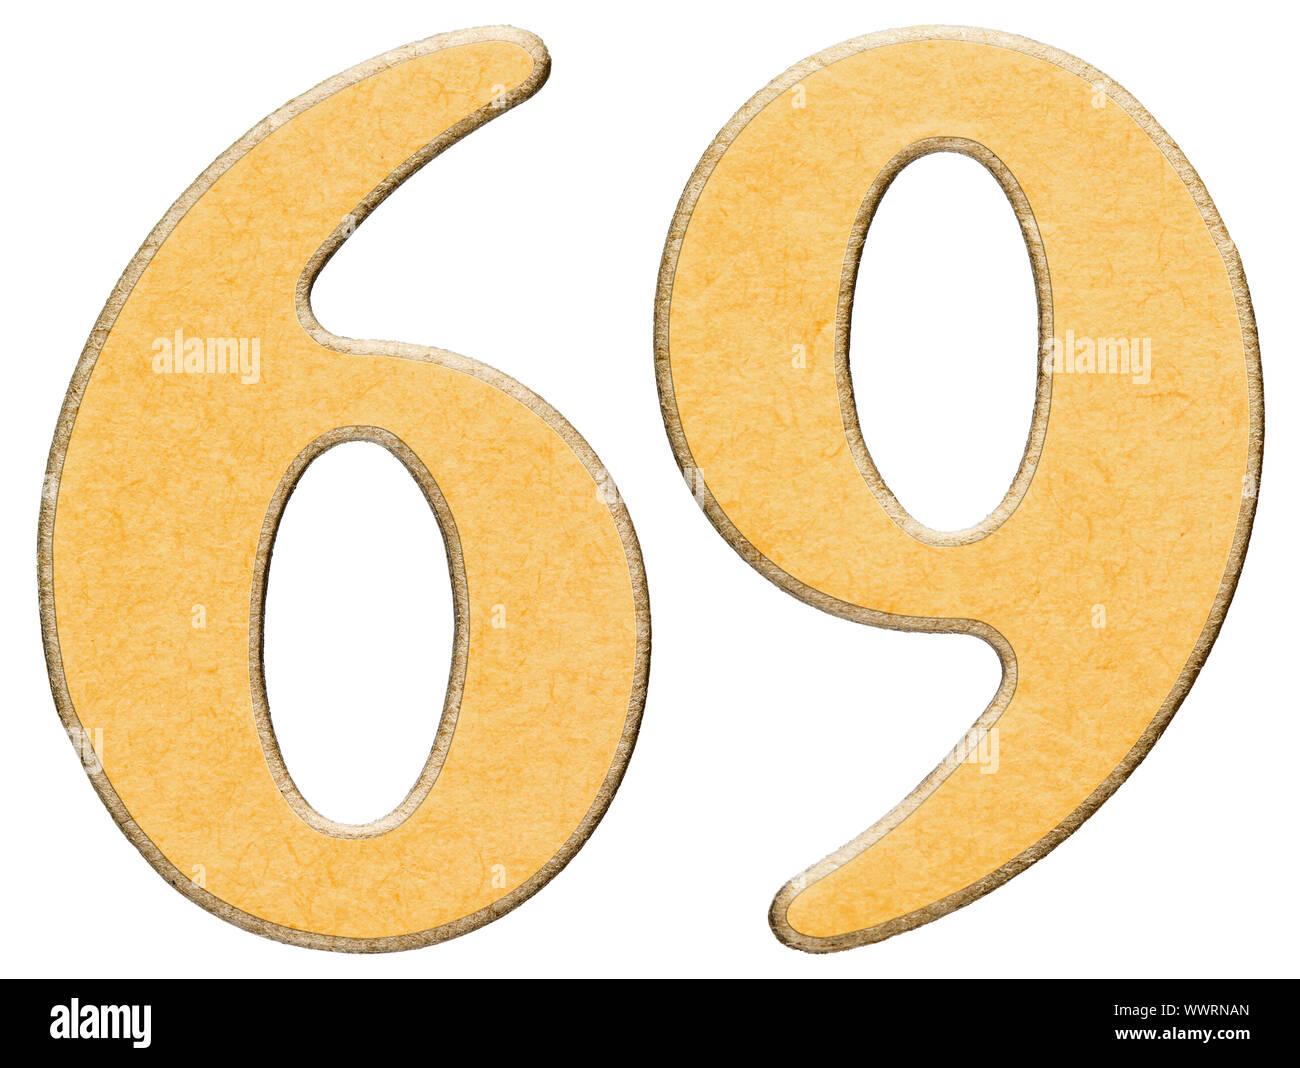 69, sessanta nove, numero di legno combinato con inserto giallo, isolato su sfondo bianco Foto Stock